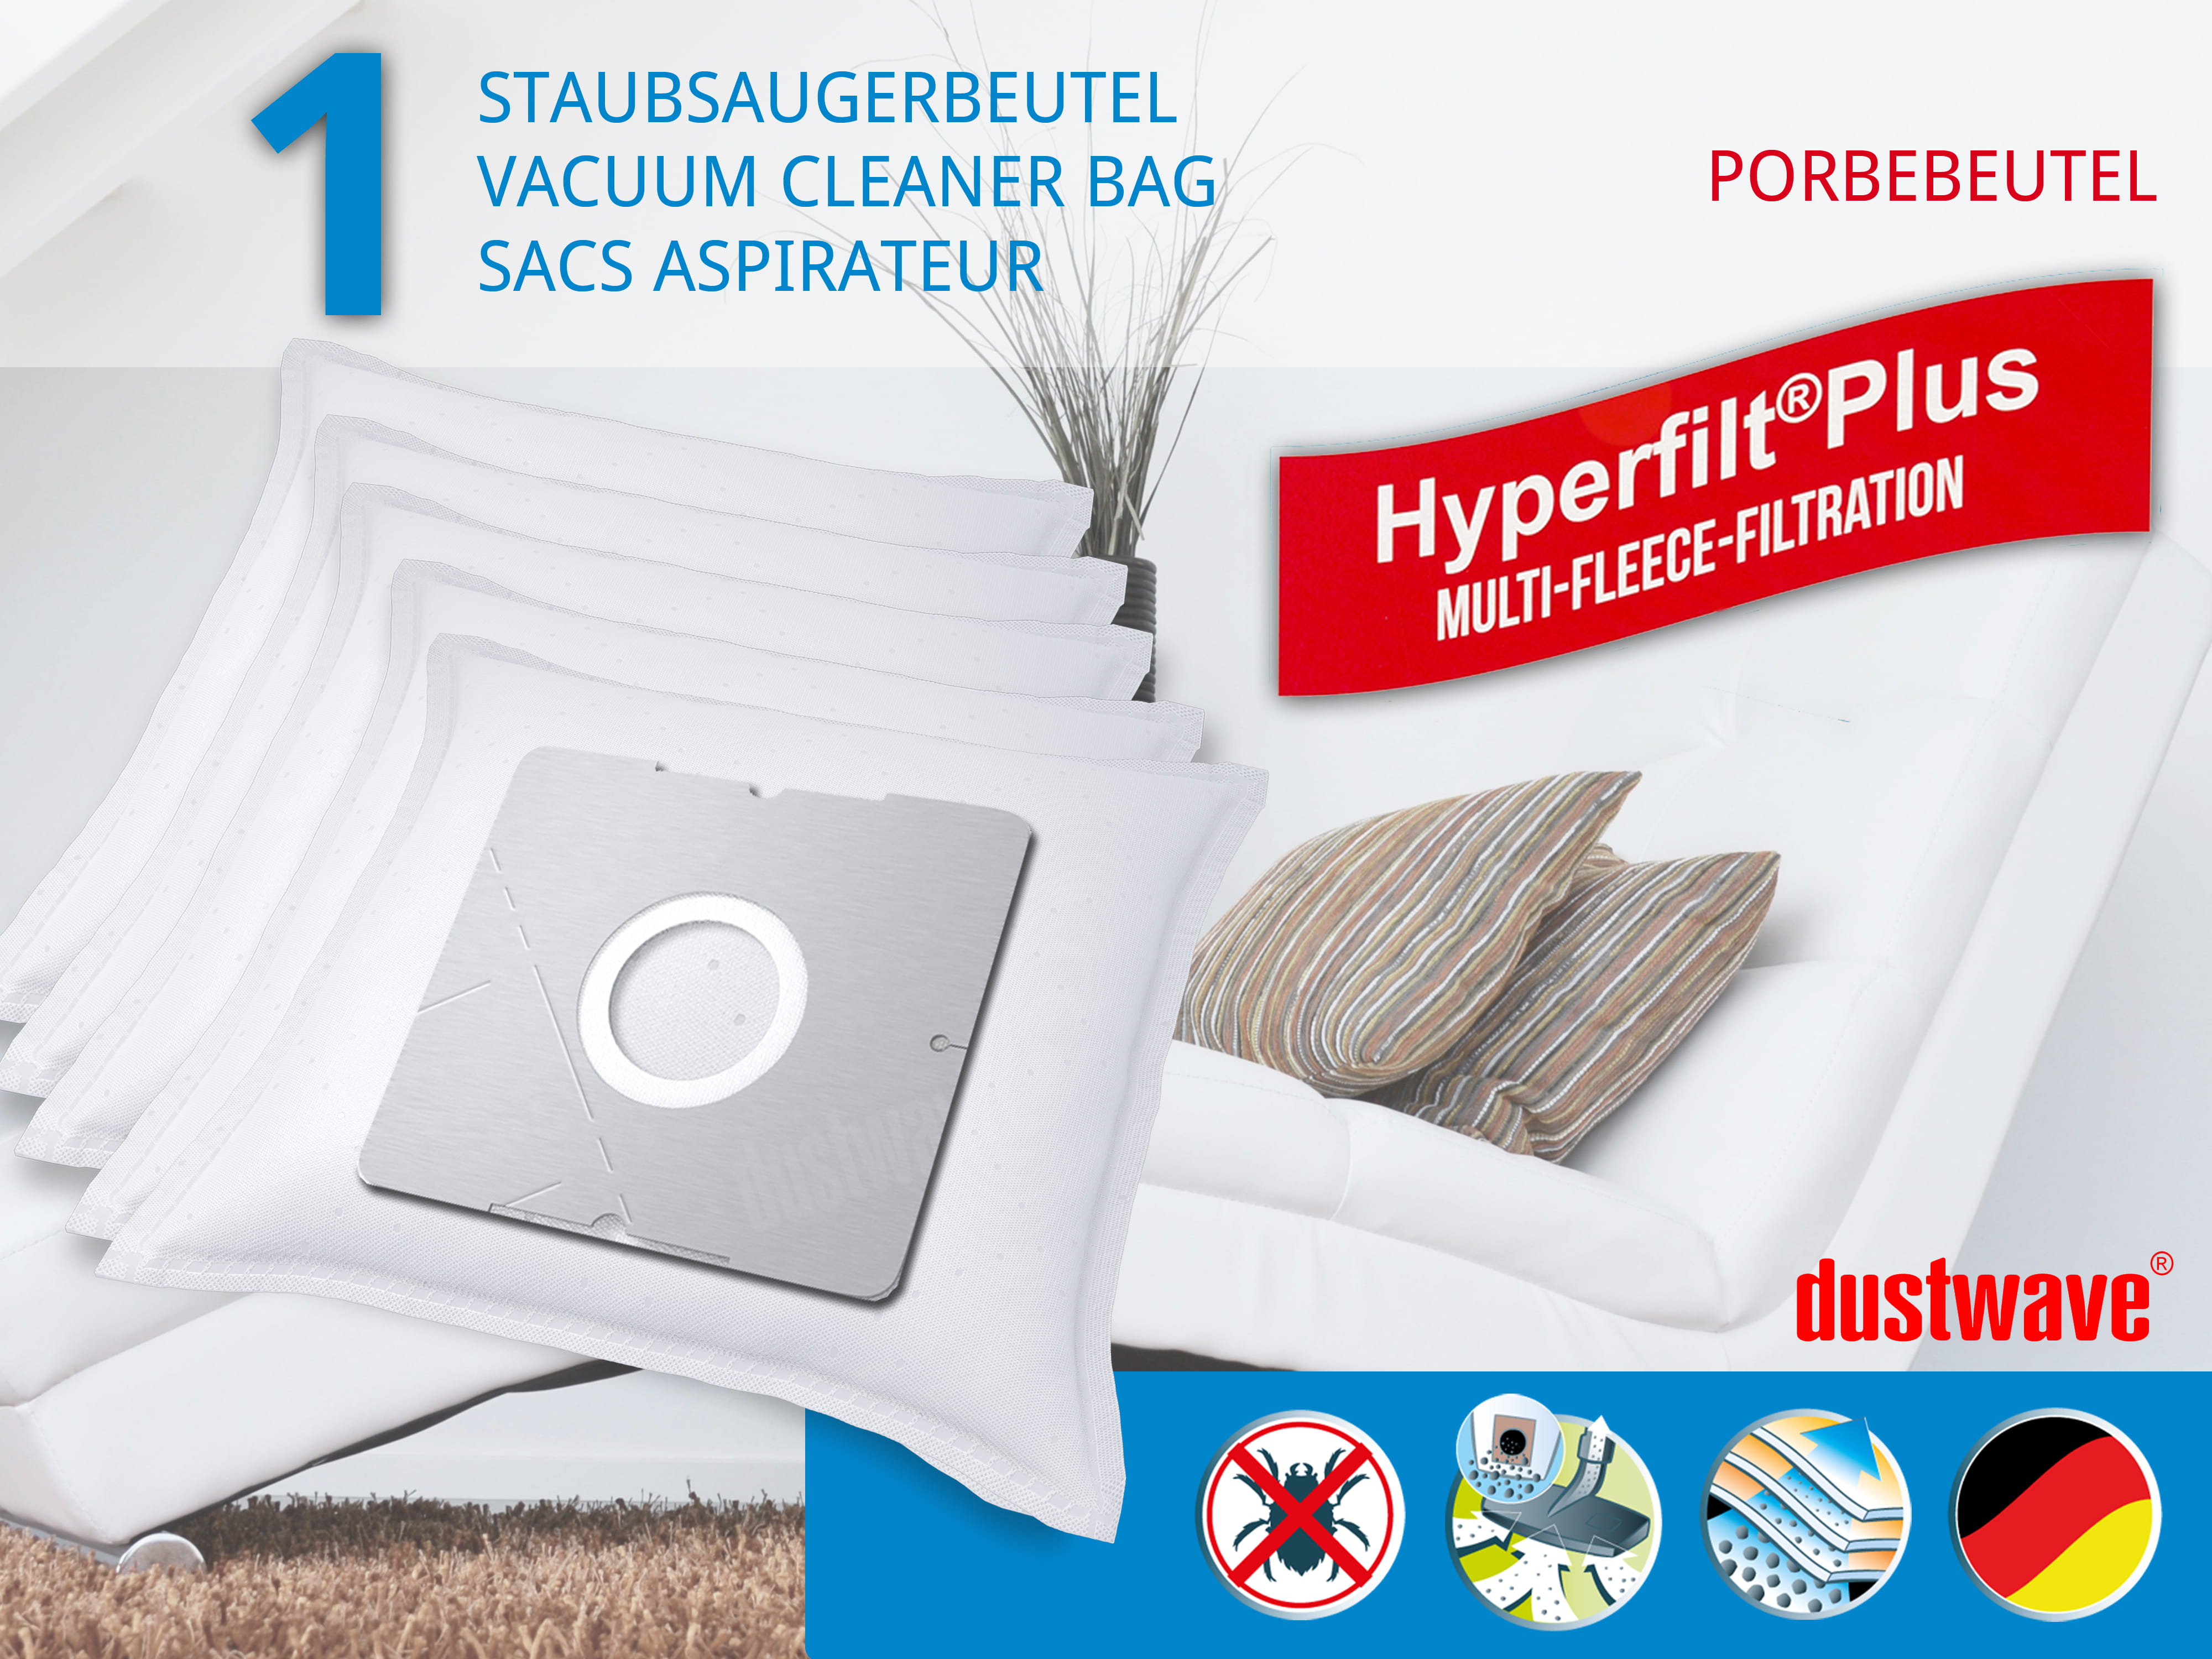 Dustwave® 1 Staubsaugerbeutel für Emerio VE-108317 - hocheffizient mit Hygieneverschluss - Made in Germany